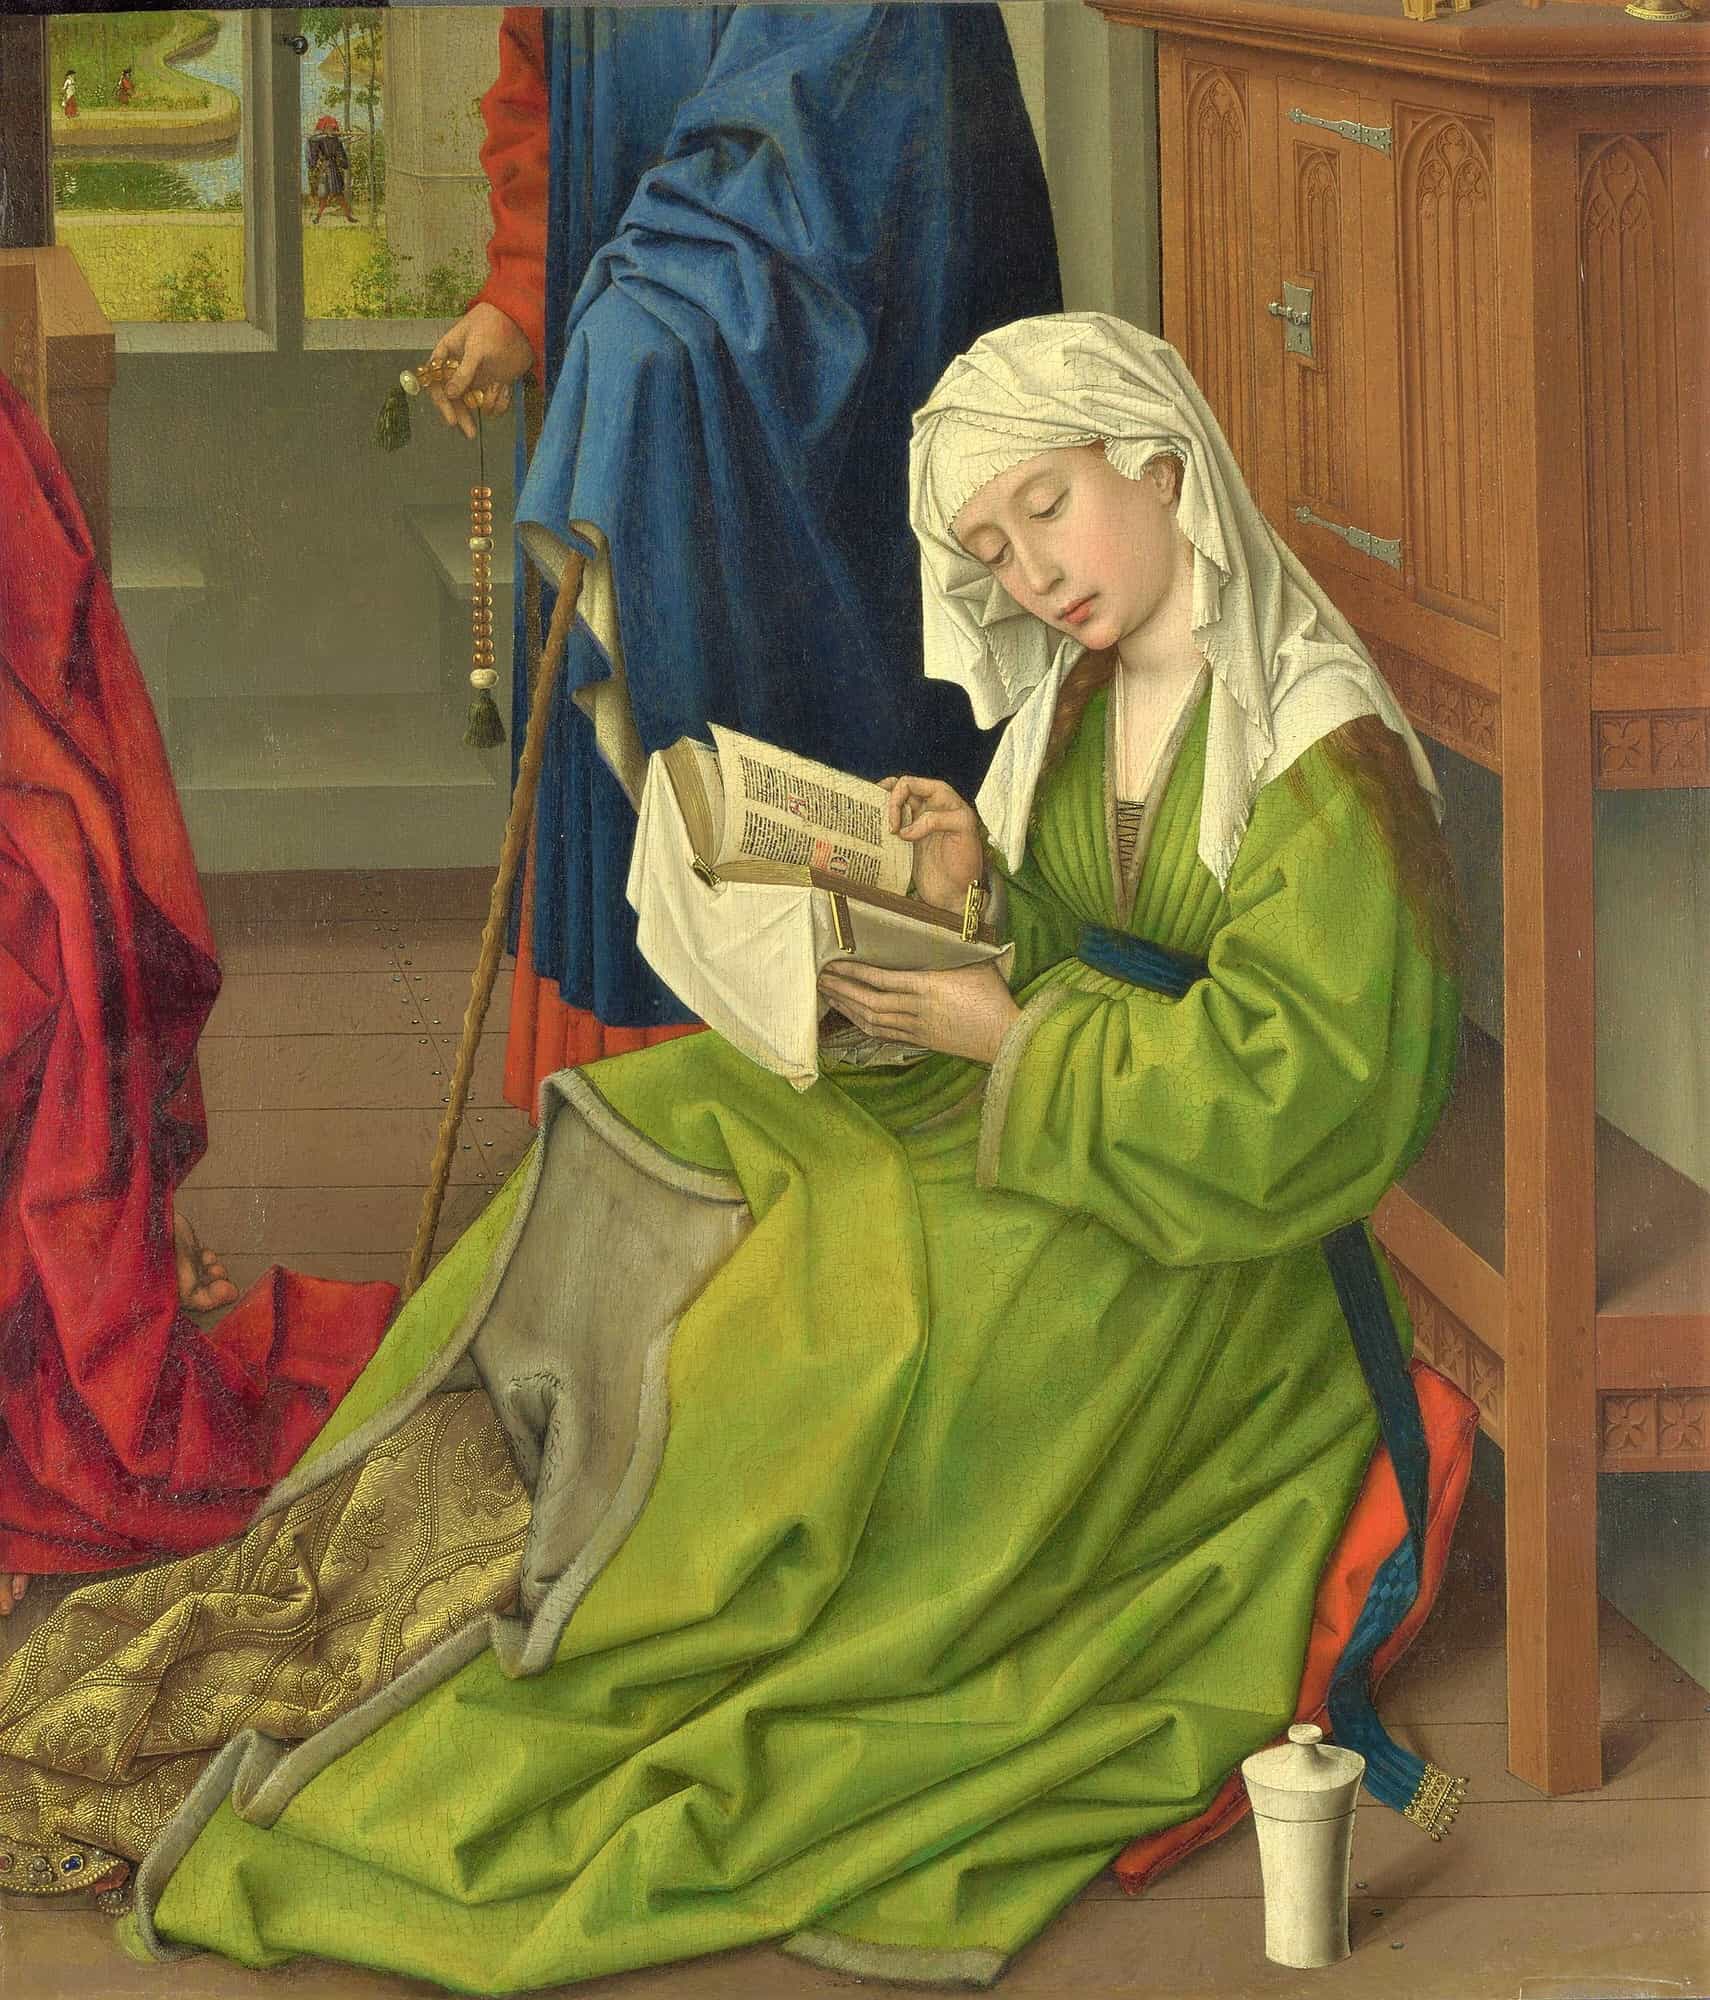  《読書するマグダラのマリア》 ロヒール・ファン・デル・ウェイデン 【1438年以前】